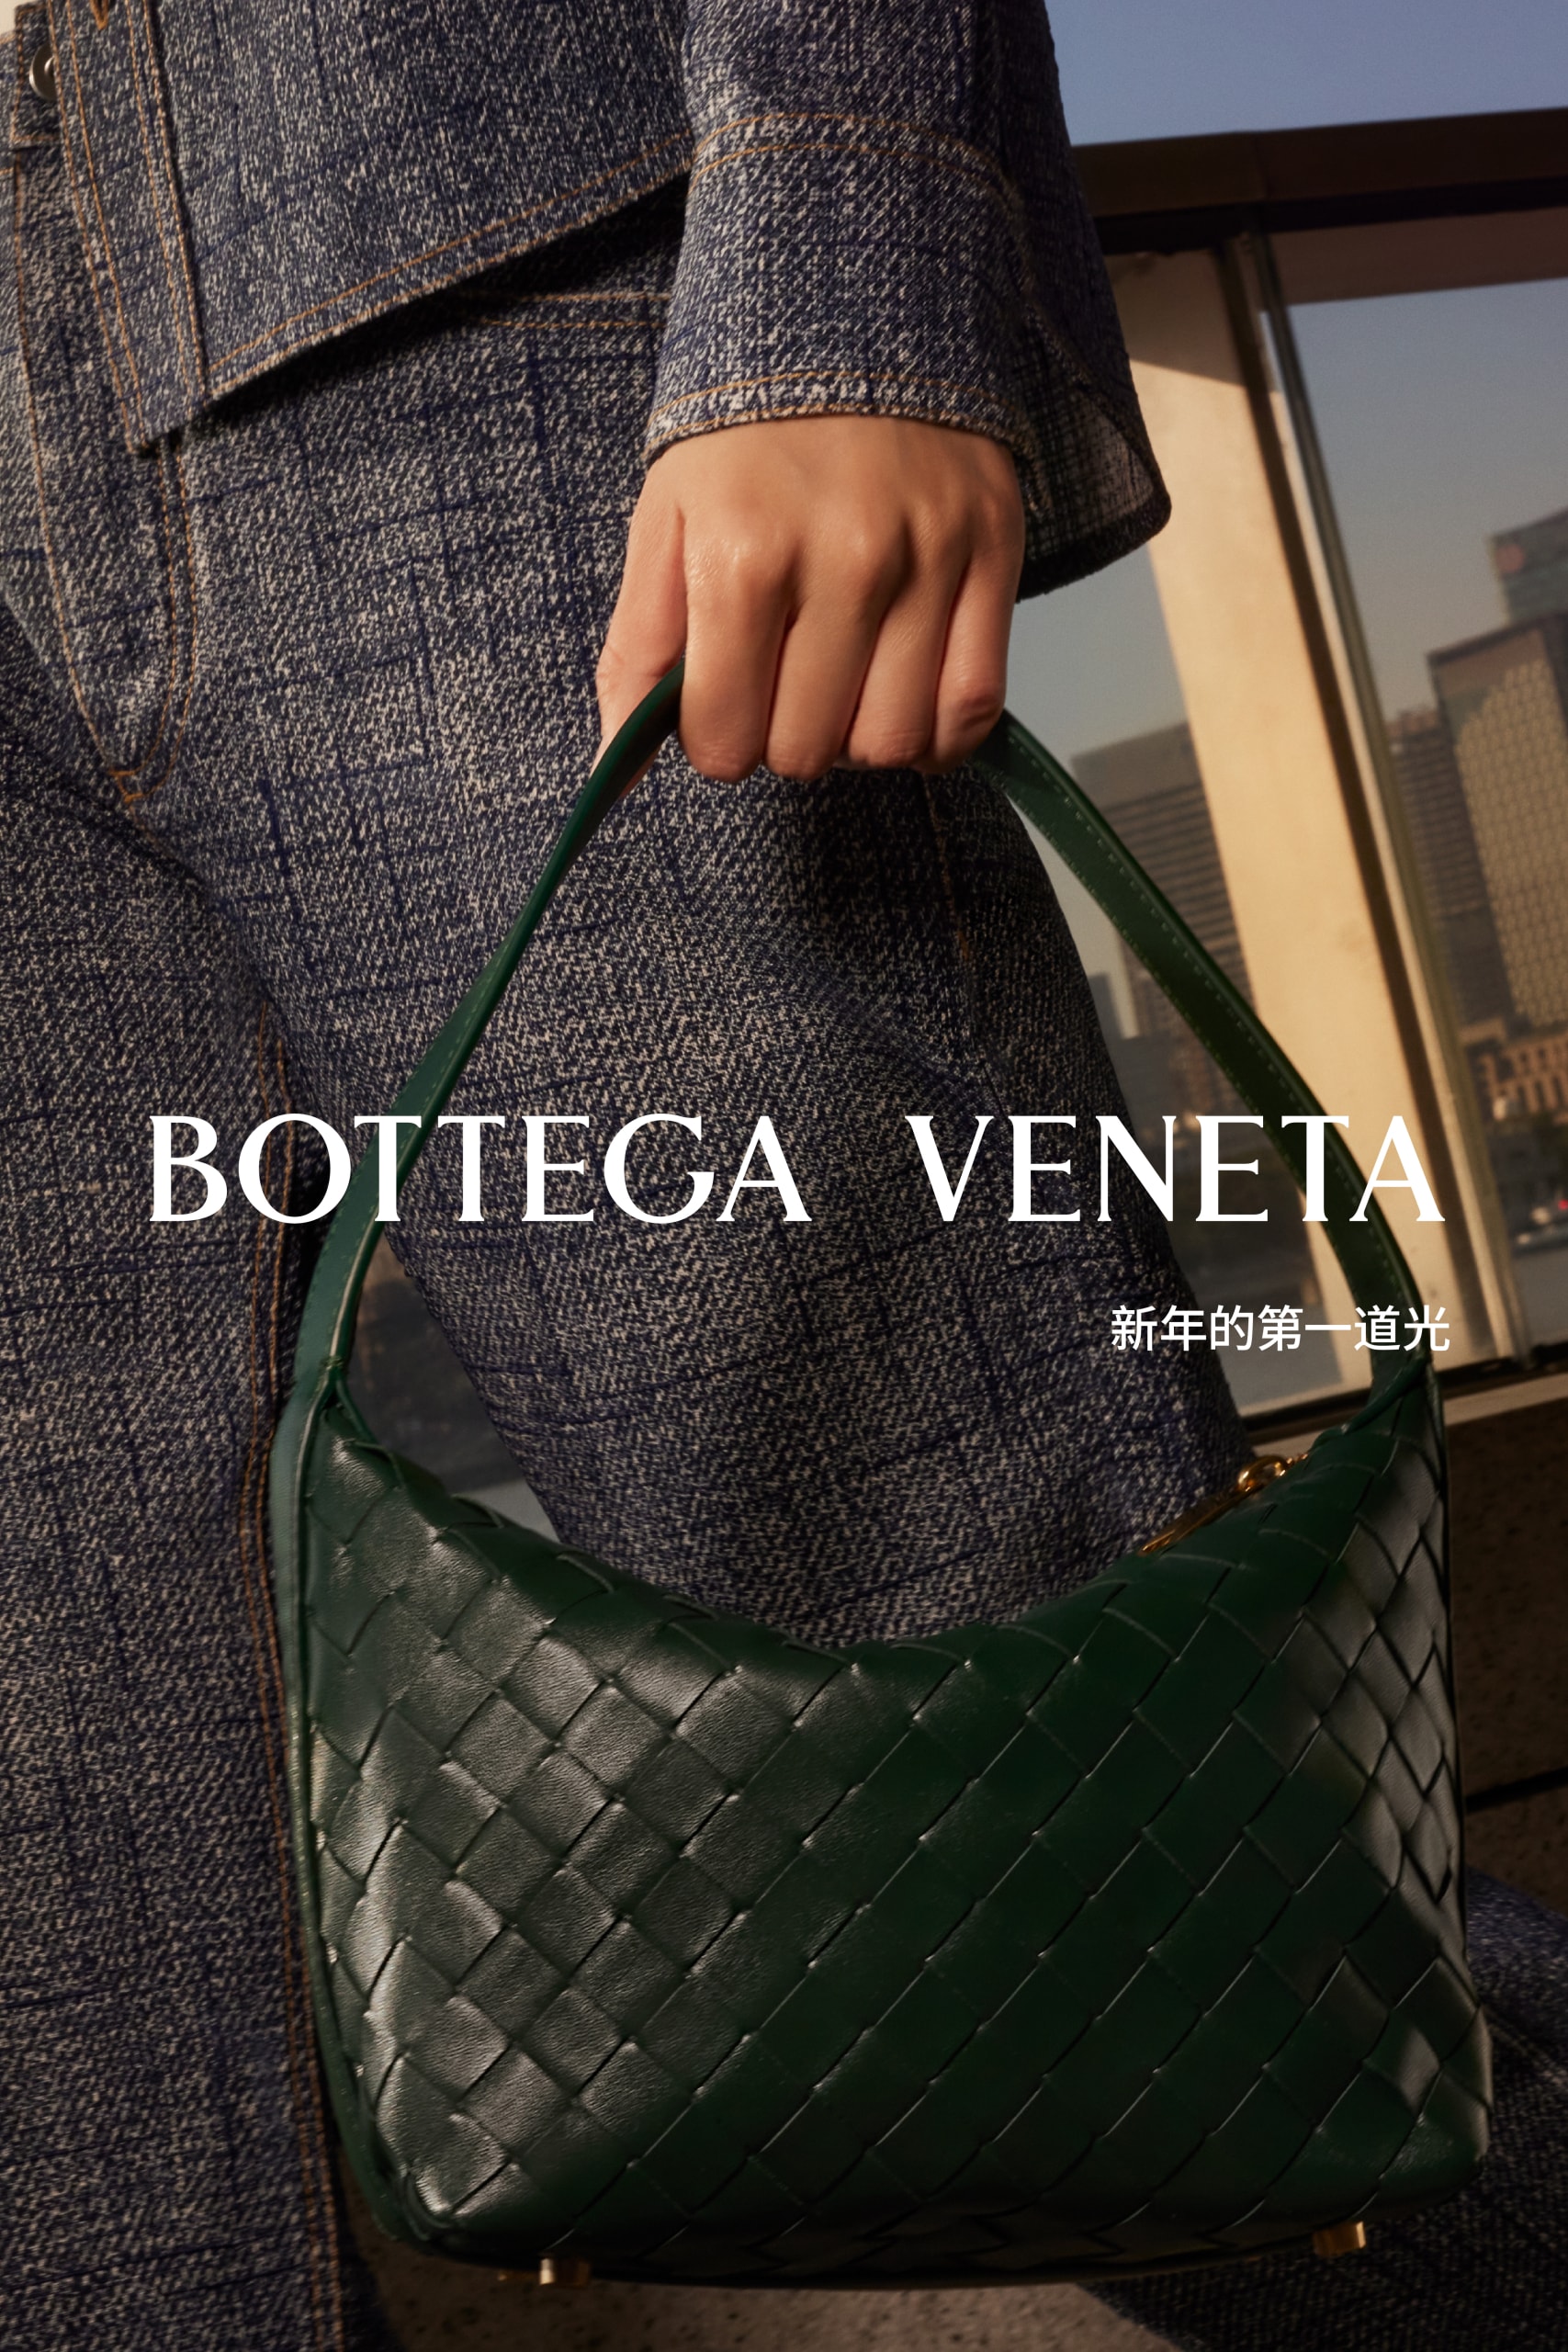 Bottega Veneta 发布农历新年企划《新年的第一道光》